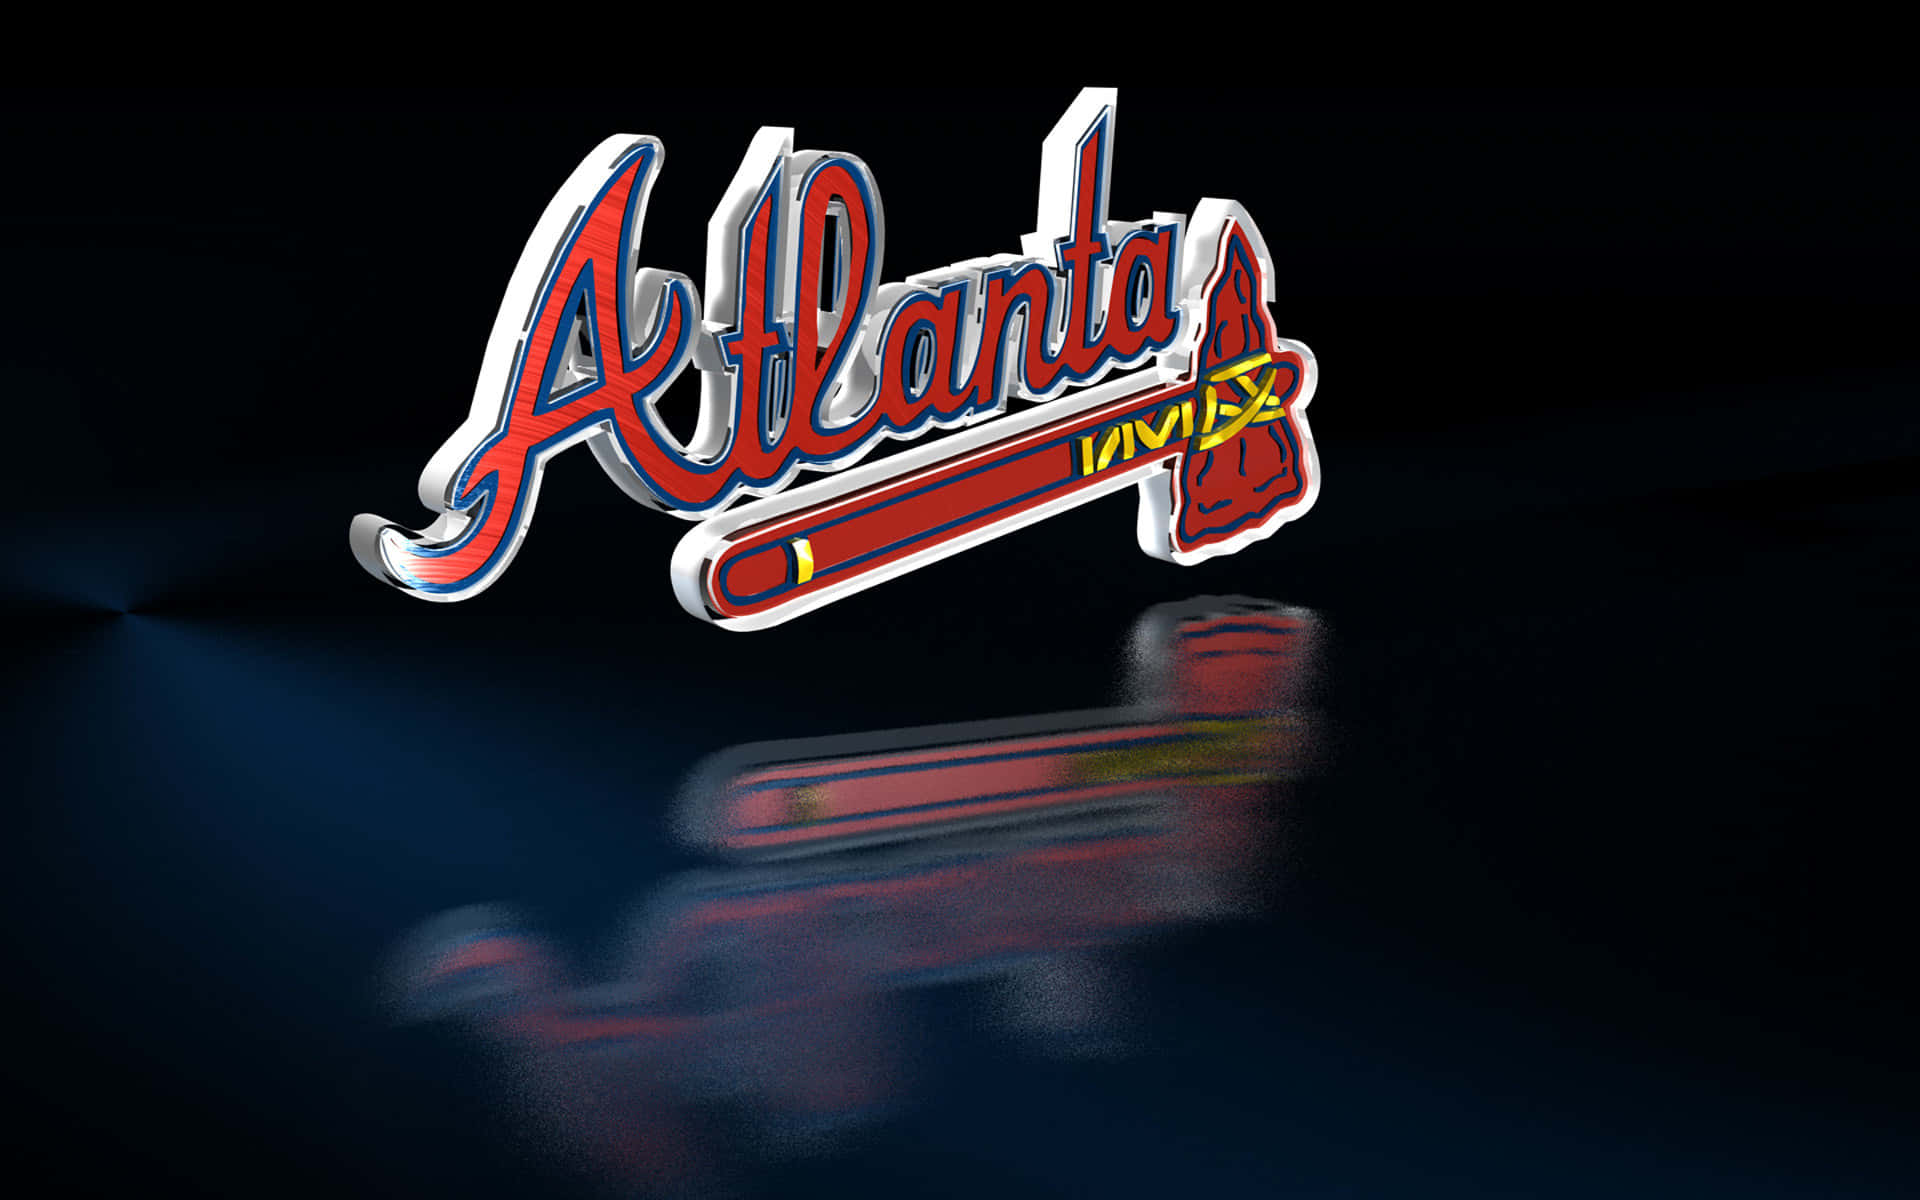 Atlanta Braves 2019  Atlanta braves wallpaper, Atlanta braves logo, Atlanta  braves